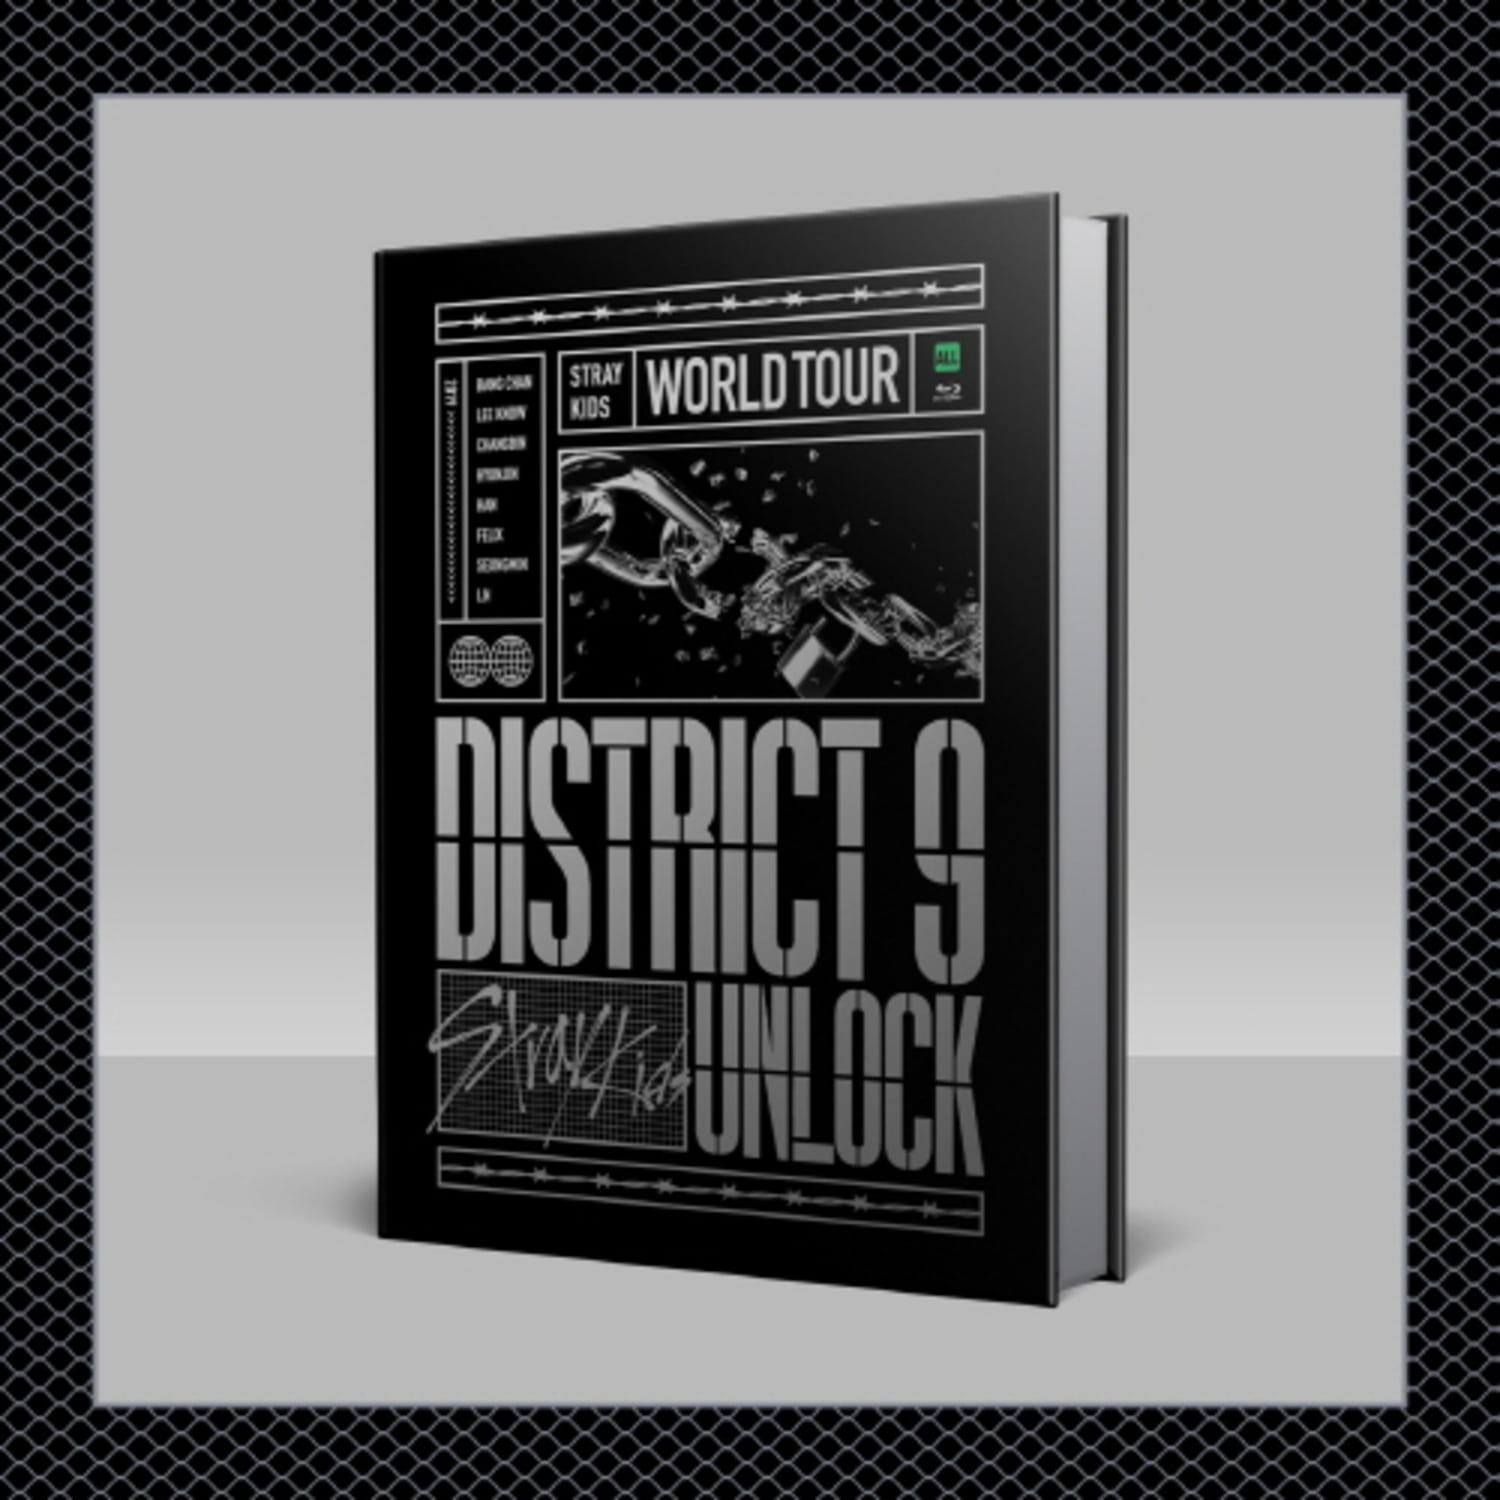 스트레이 키즈(STRAY KIDS) - [District 9 : Unlock&#039; in SEOUL] BLU-RAY